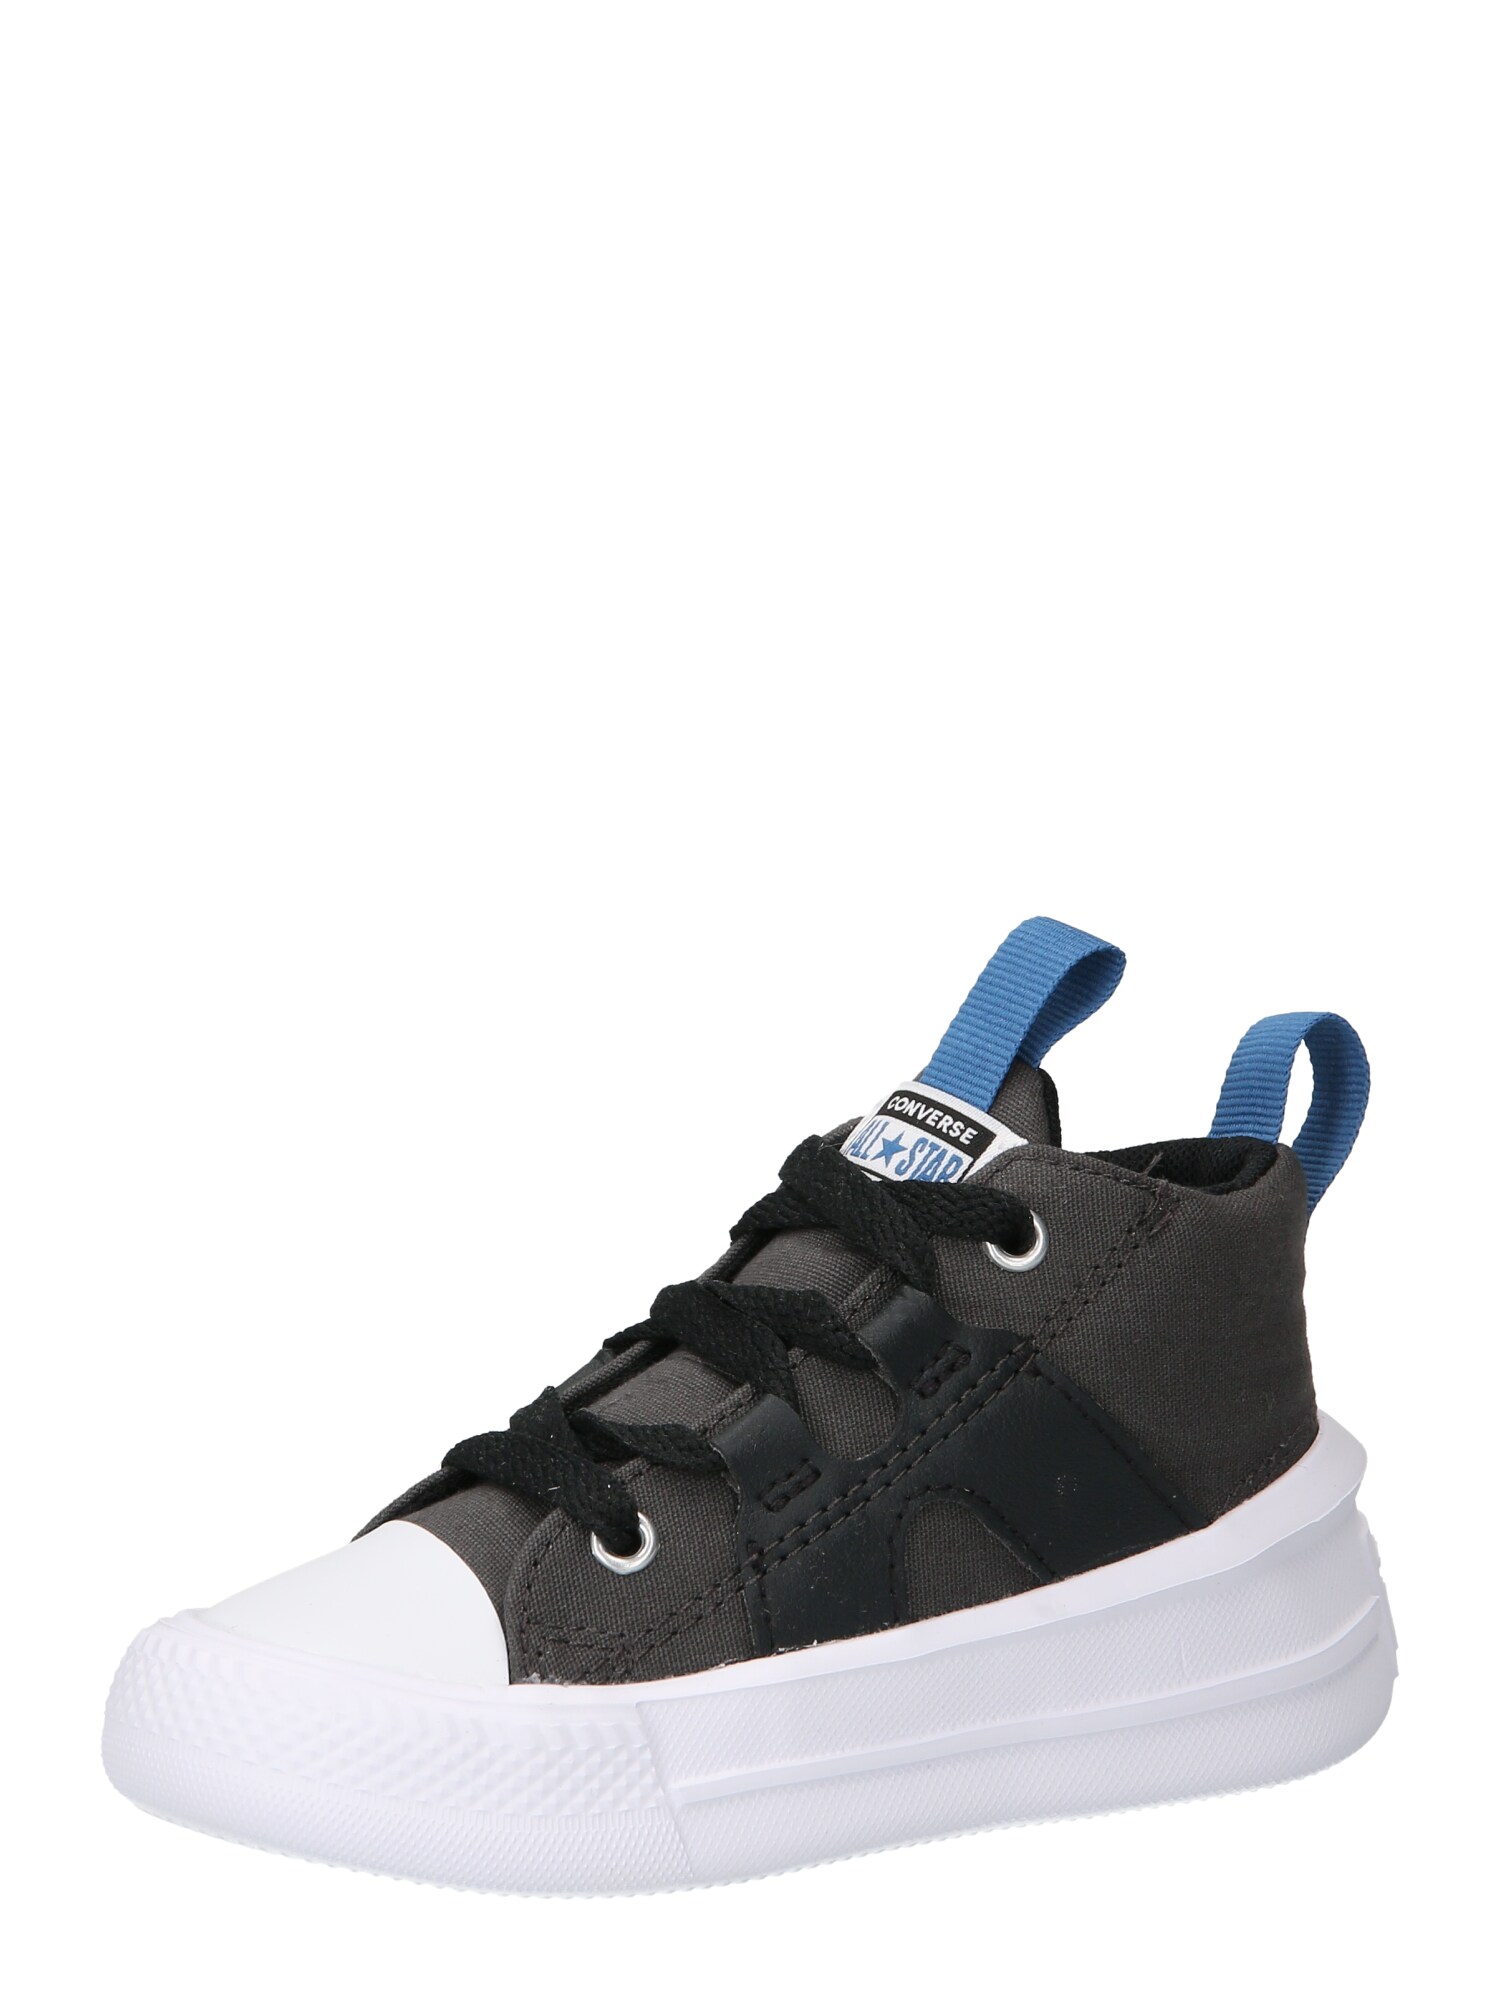 Converse CONVERSE Sneaker 'Chuck Taylor All Star Ultra' himmelblau / graphit / schwarz / weiß